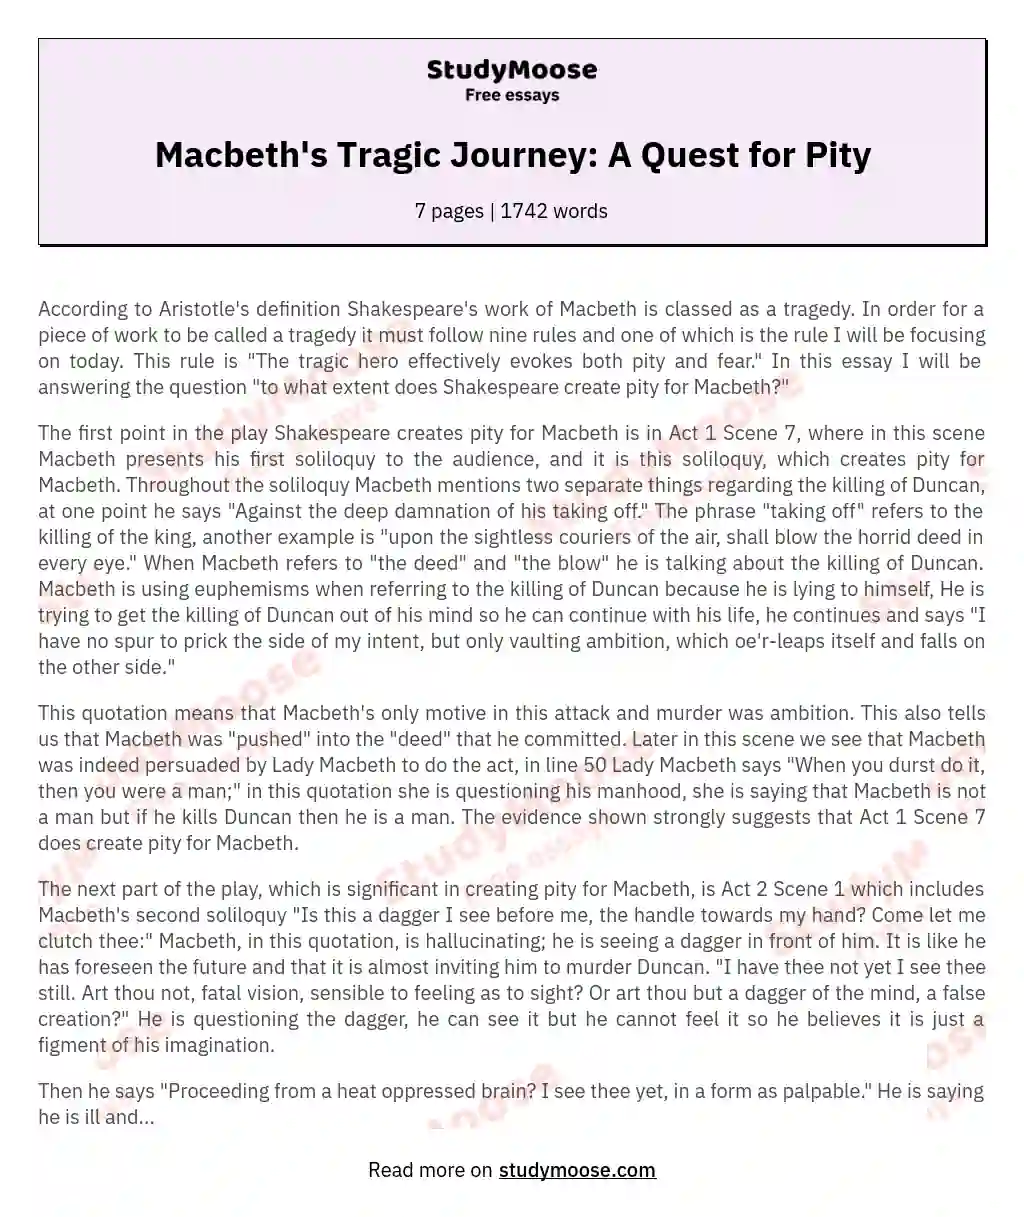 The Tragedy Of Macbeth